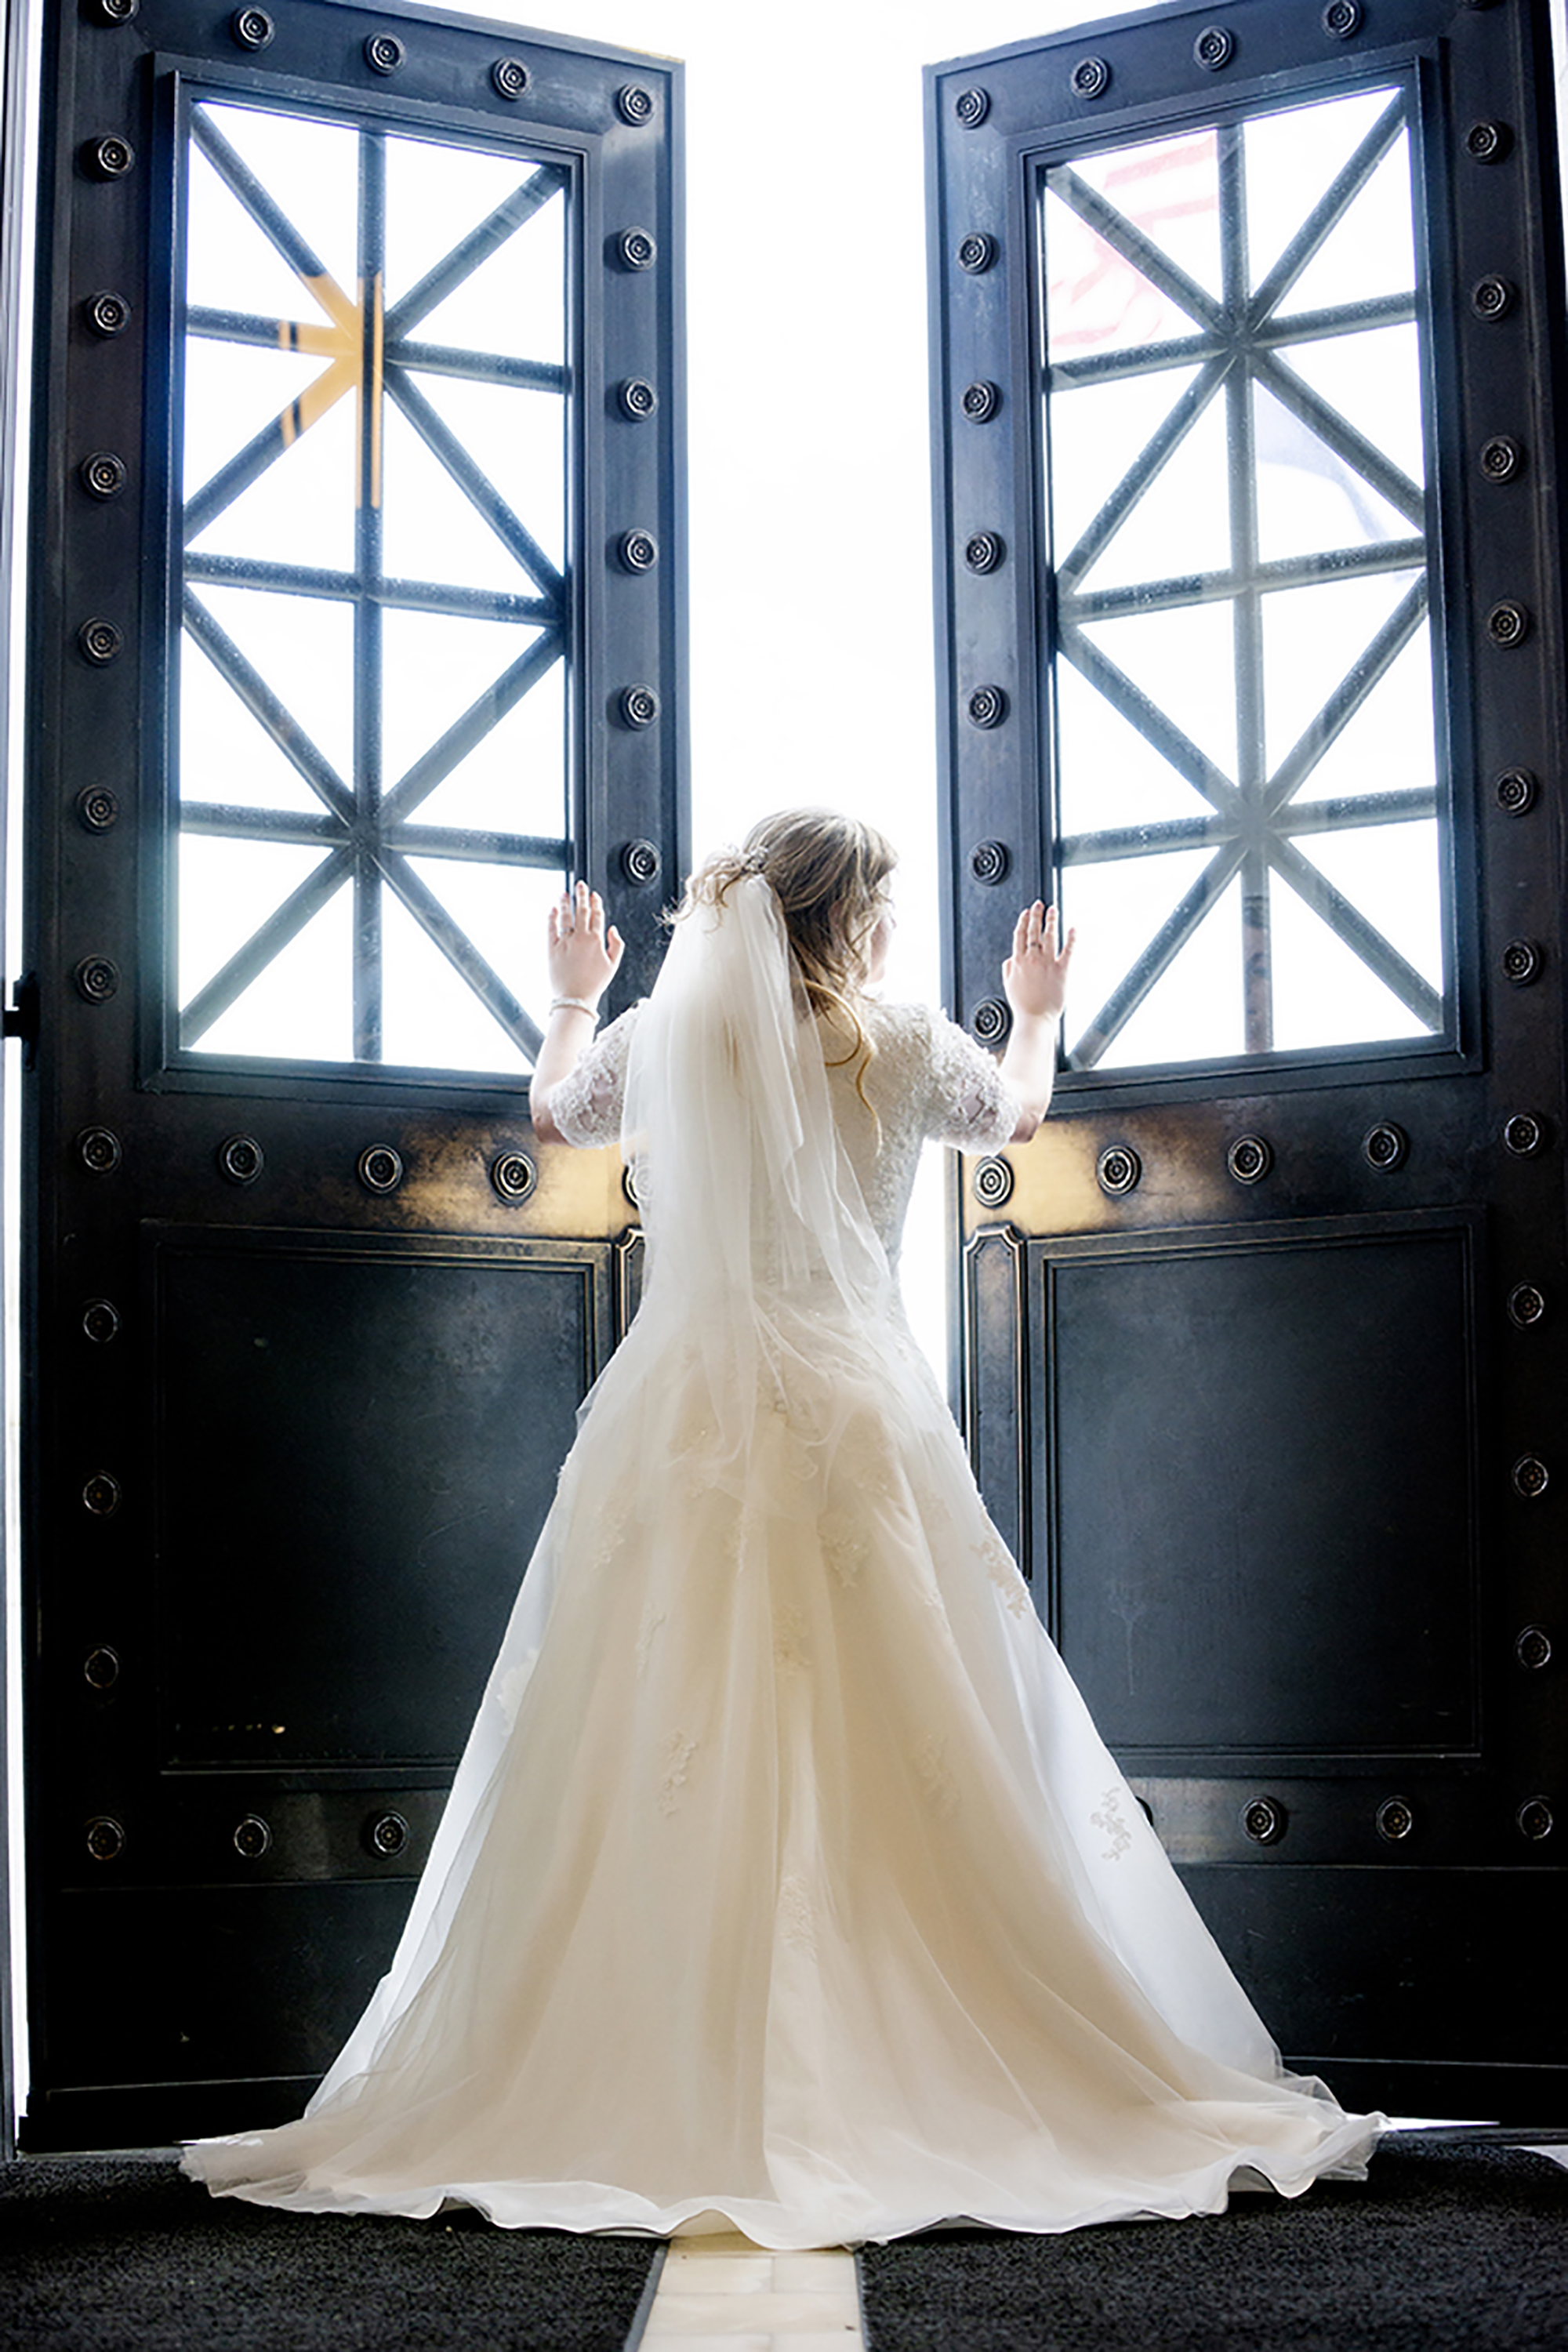 Bride opening doors